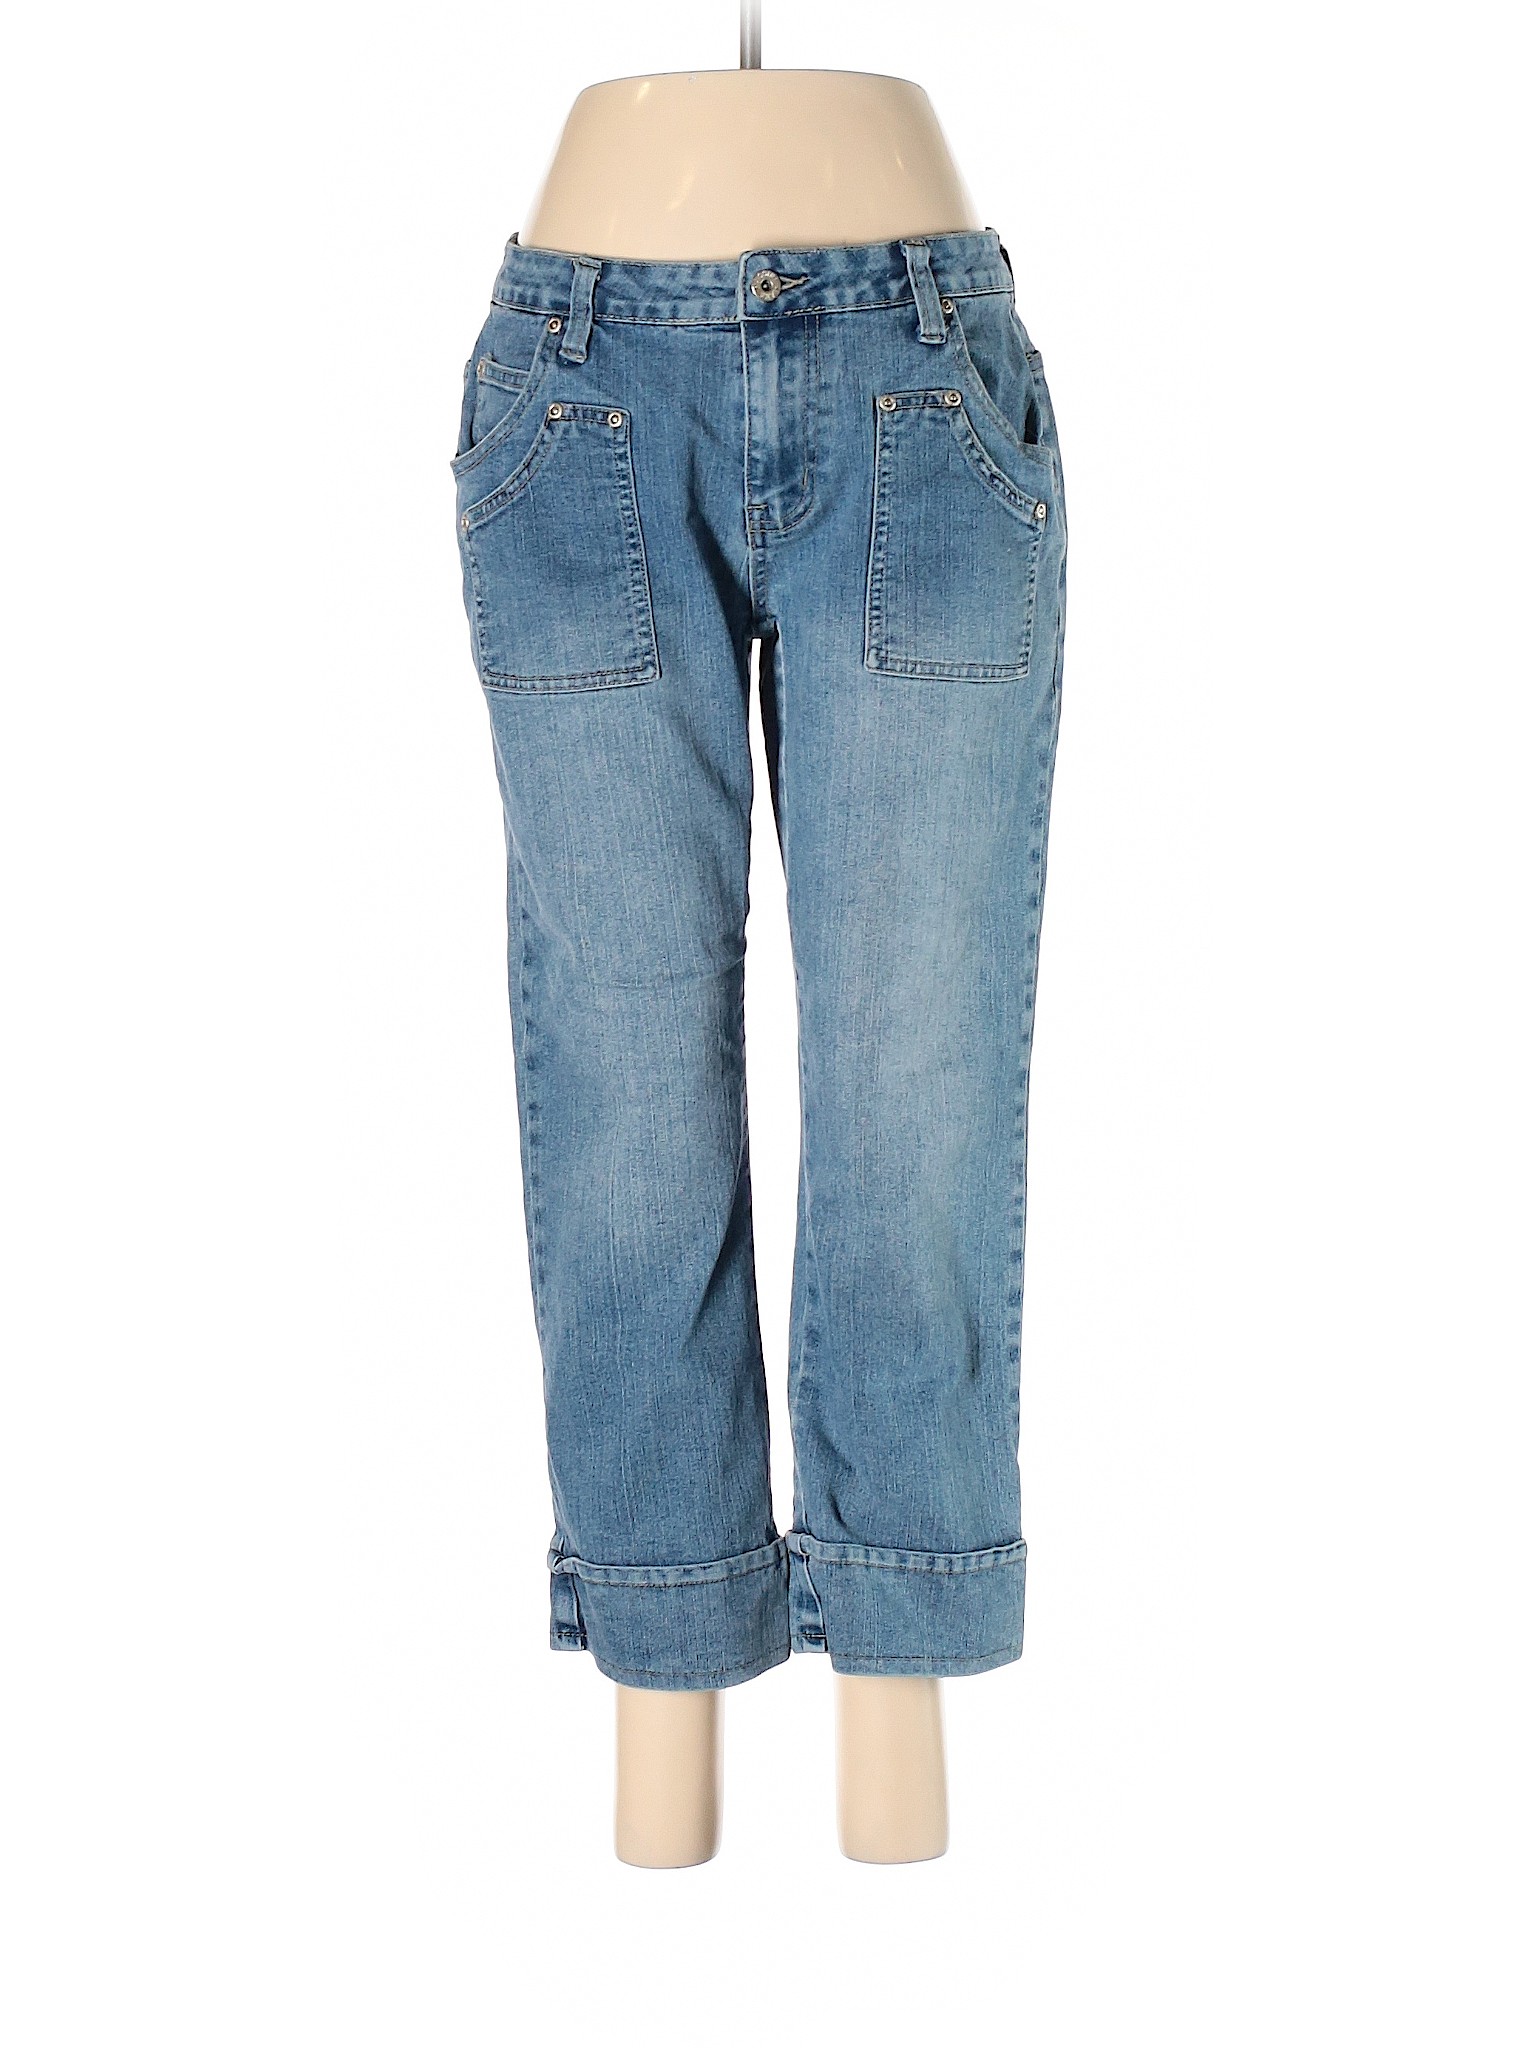 Massini Women Blue Jeans 4 | eBay